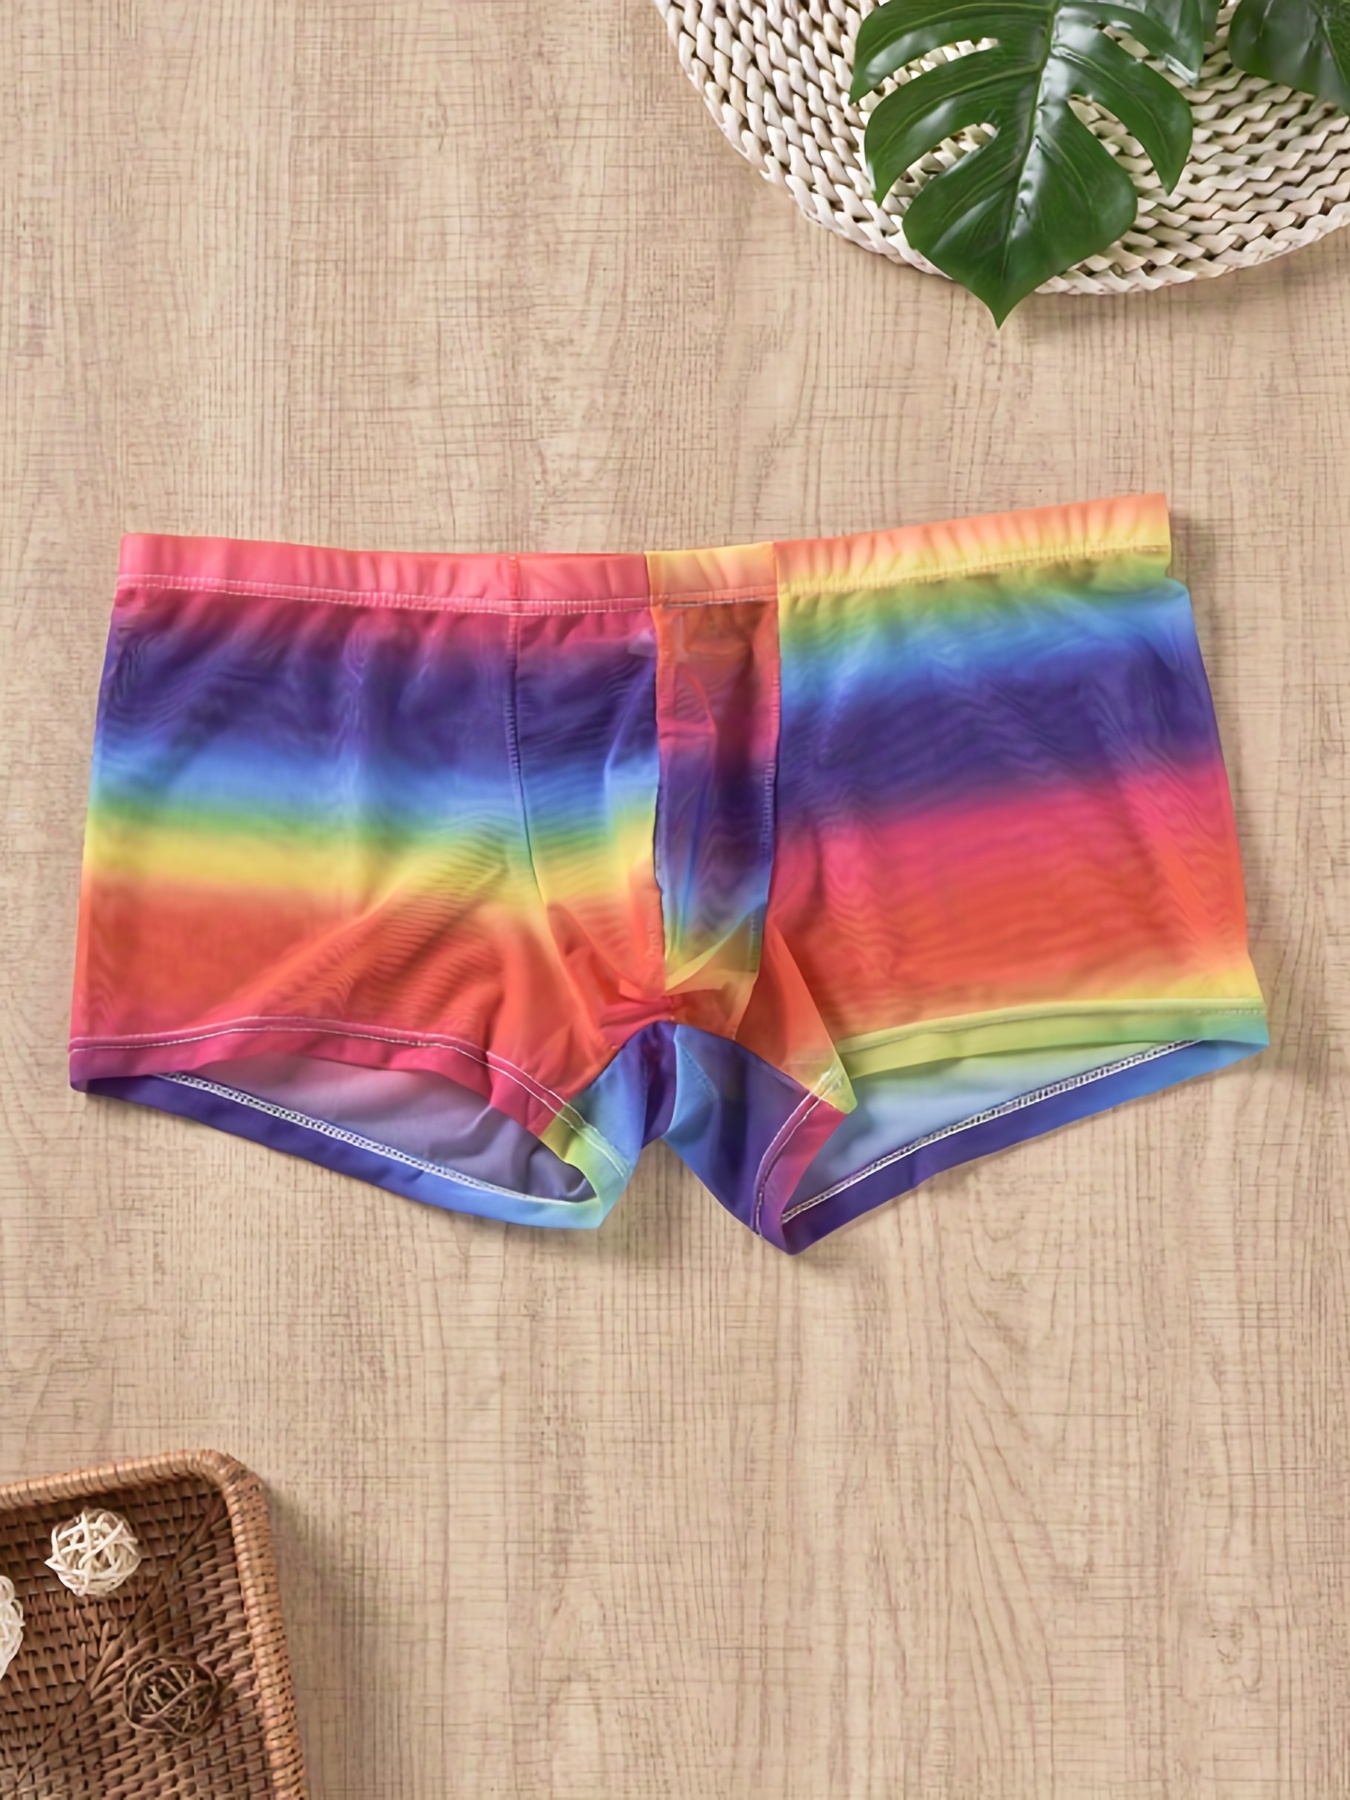 Tie Dye Rainbow Underwear Briefs for Men